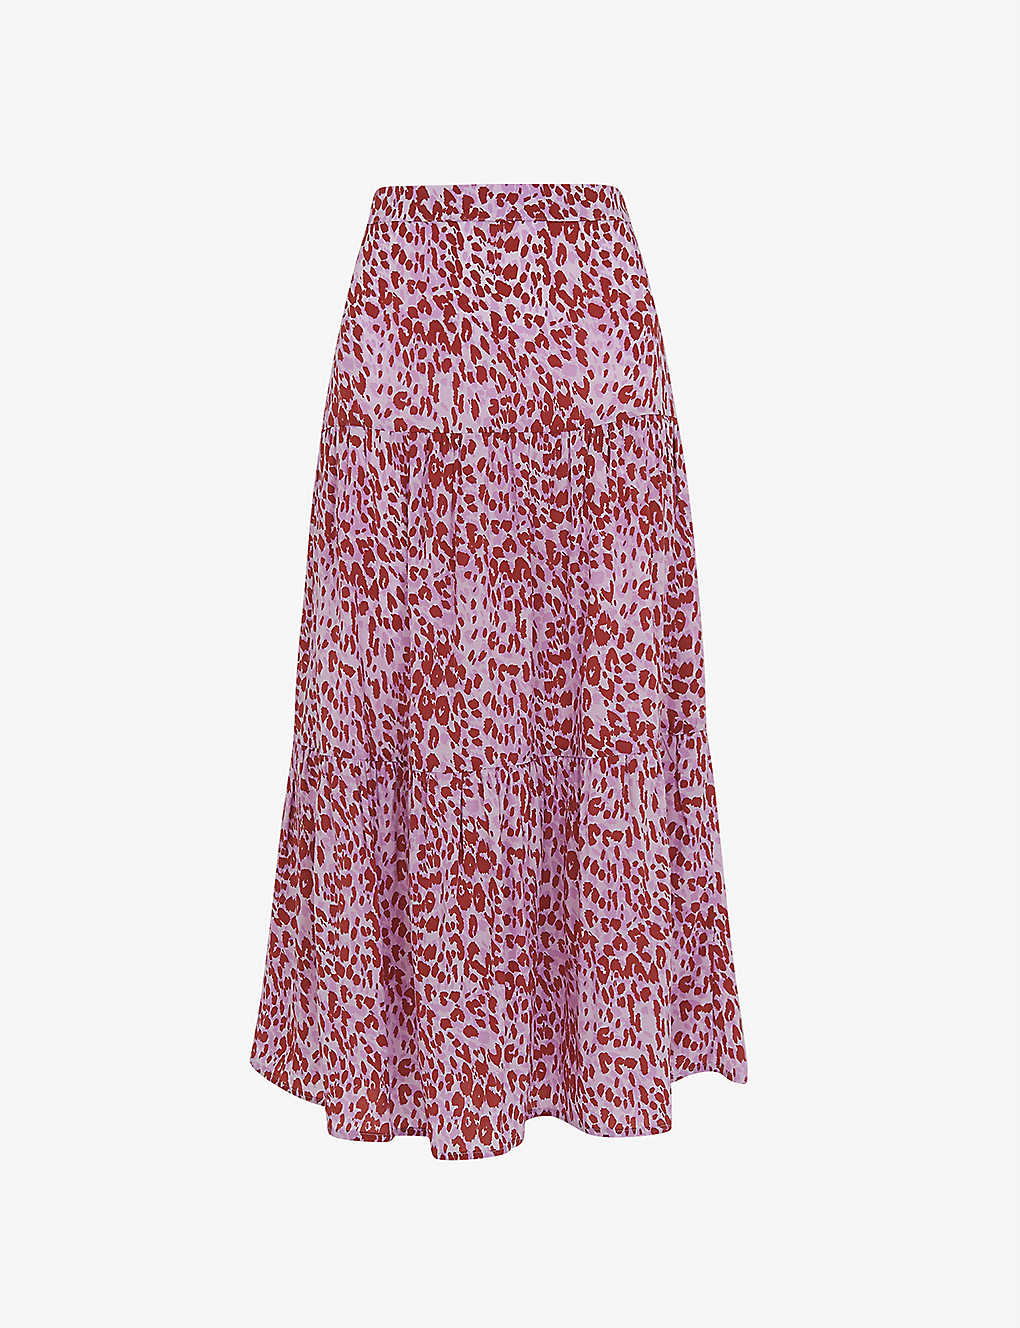 Whistles Summer Cheetah-print Woven Midi Skirt In Multi-coloured